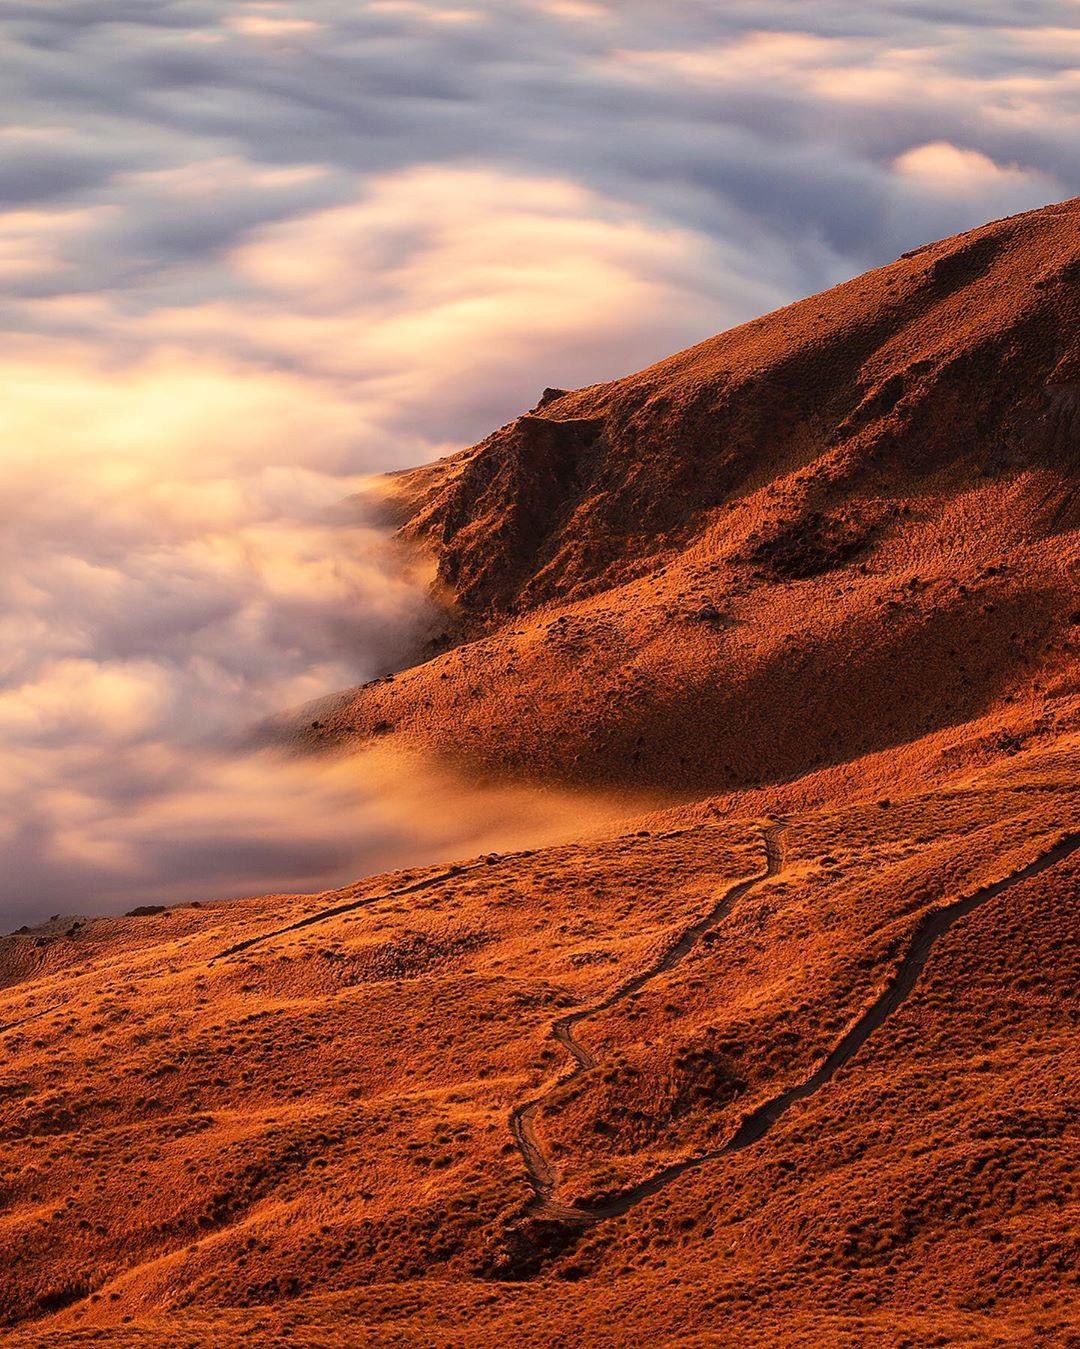  山坡云，来自摄影师Lee Cook。 